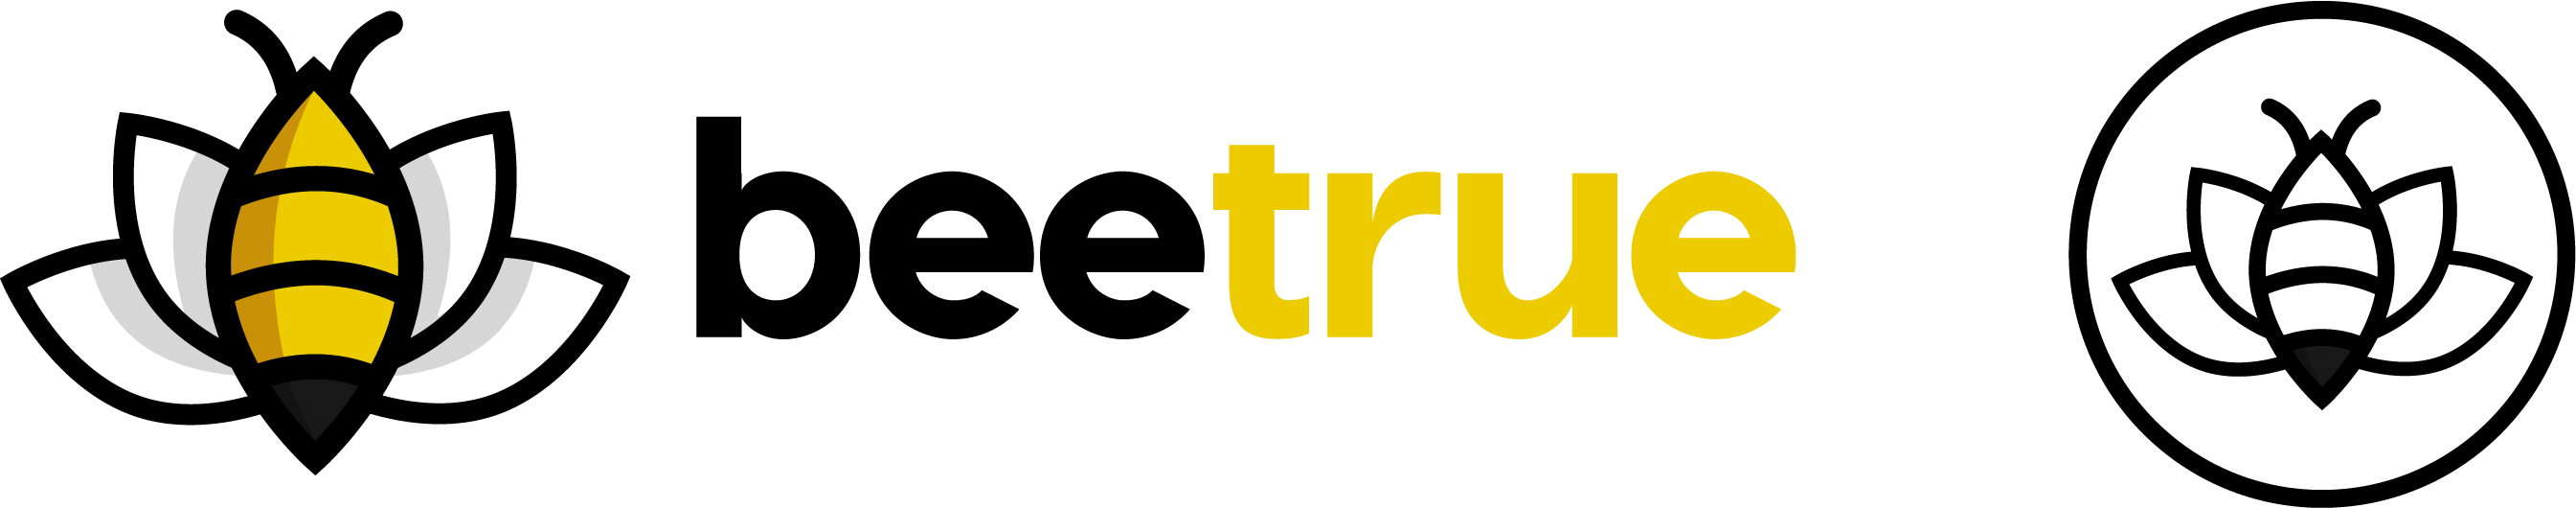 beetrue - Platform Media